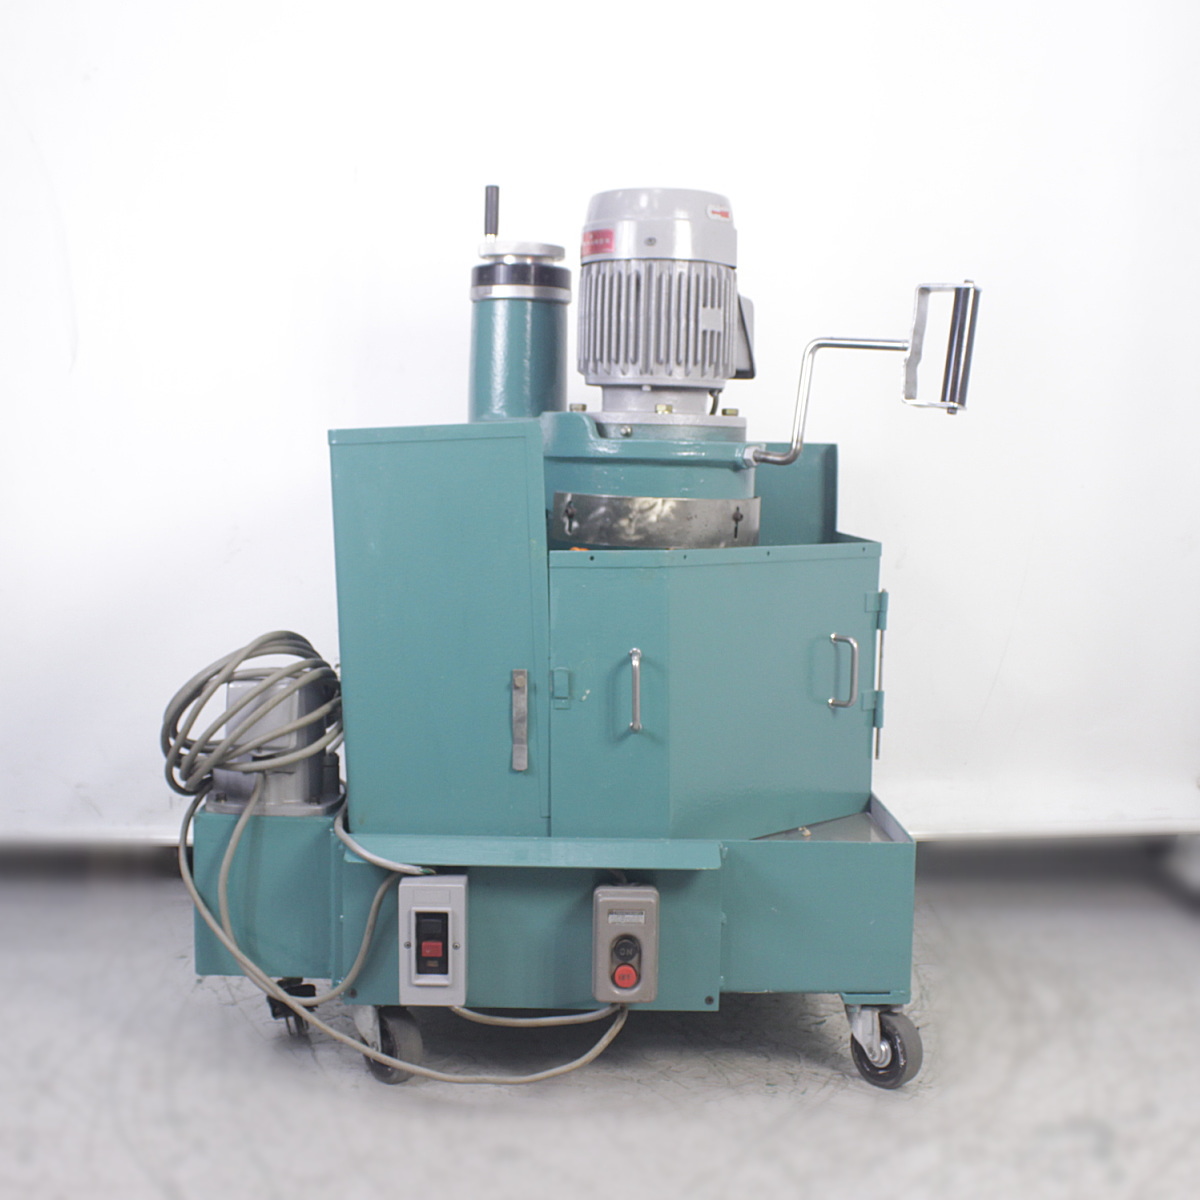 AMADA/アマダ 金型研磨機 TEG-160D 金型研磨機 TEG-160D